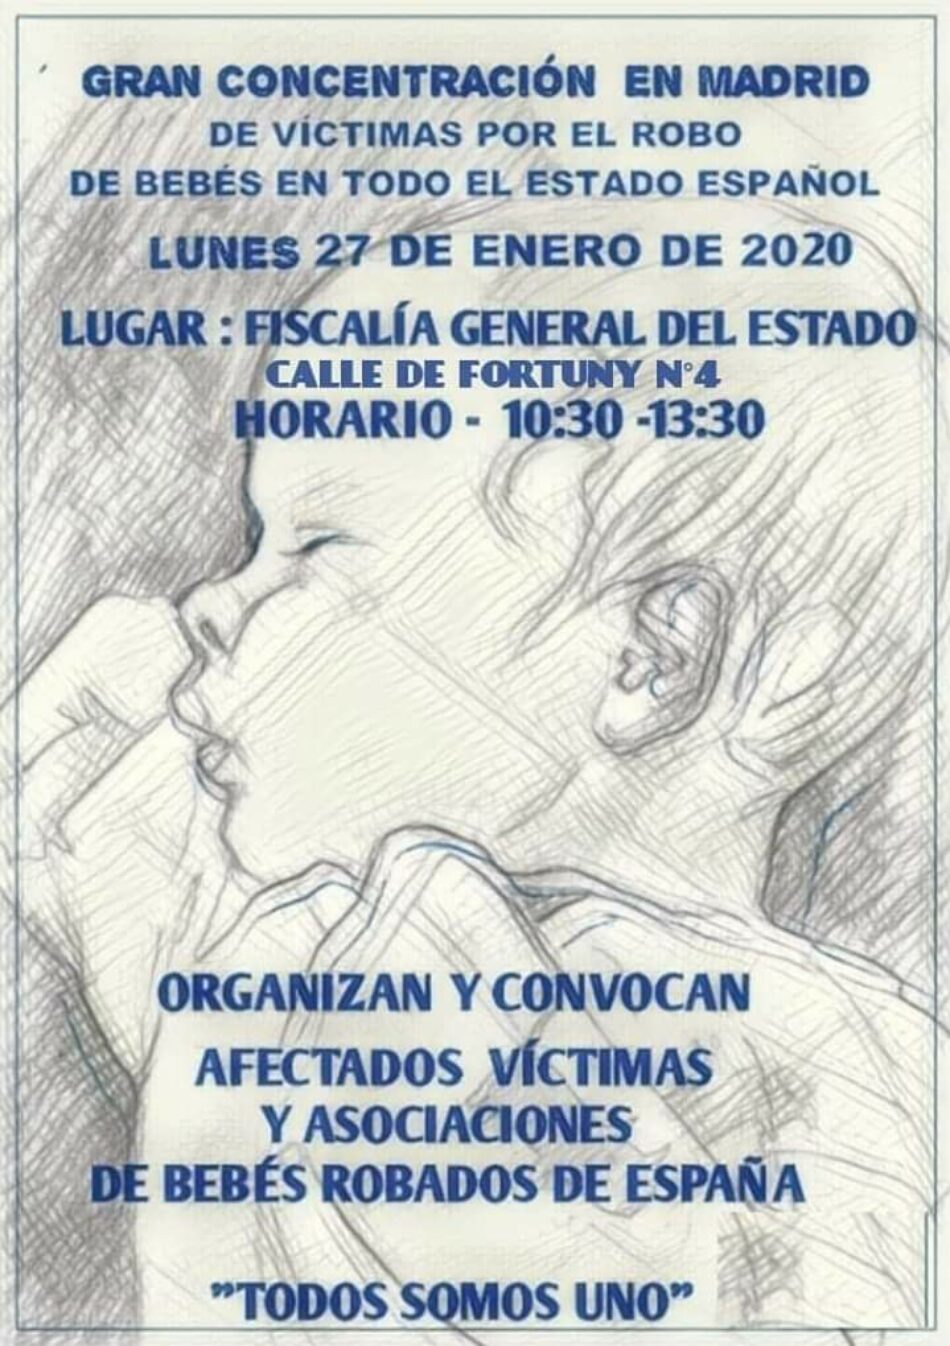 27-E: Gran concentración por el robo de bebés frente a la Fiscalía General del Estado, en Madrid